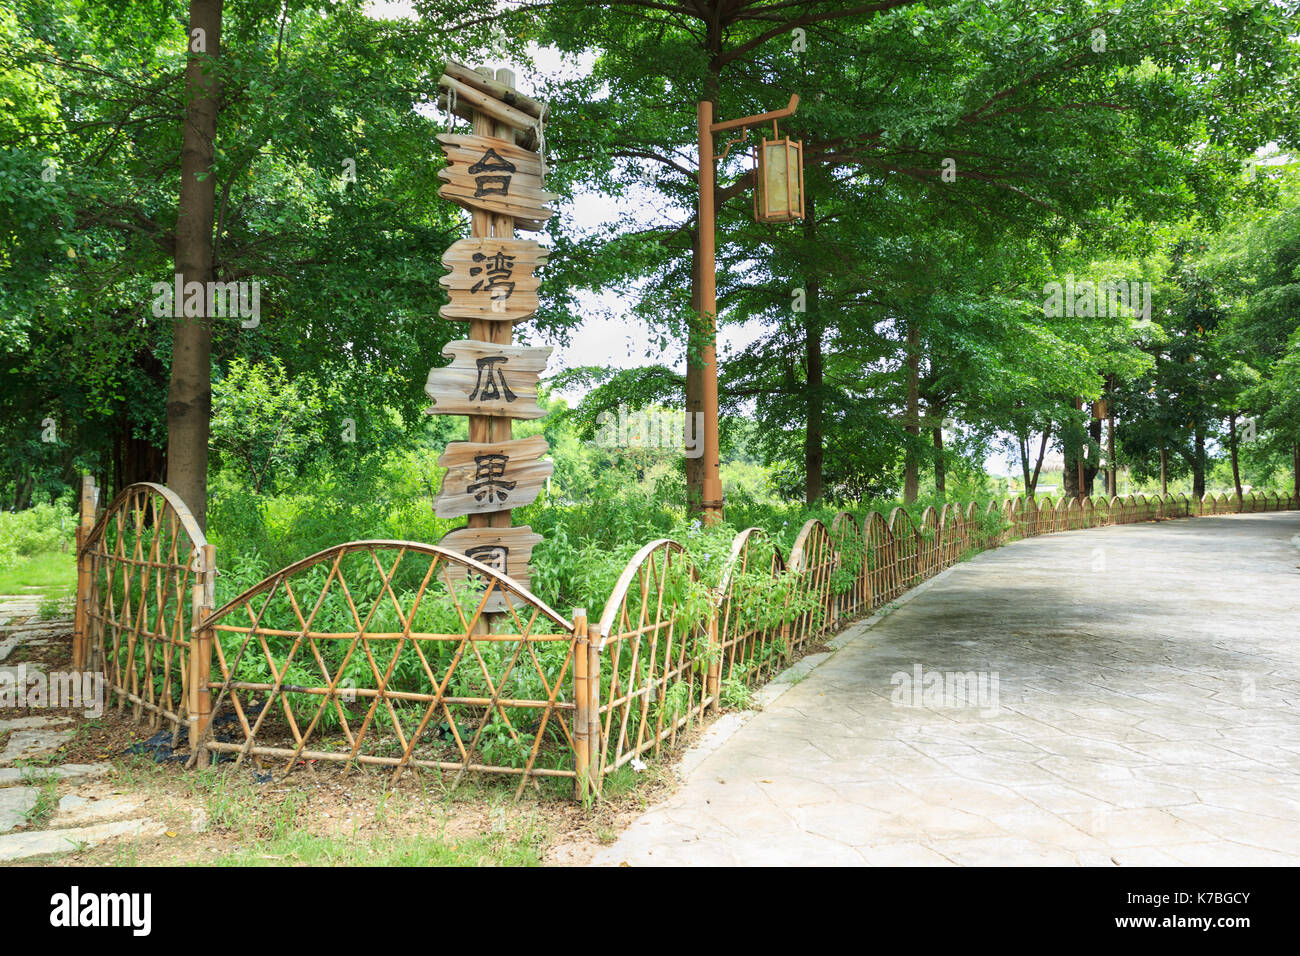 Xiamen, China - Jun 21, 2014: Taiwan melon garden with fence frame in xiamen garden expo Stock Photo